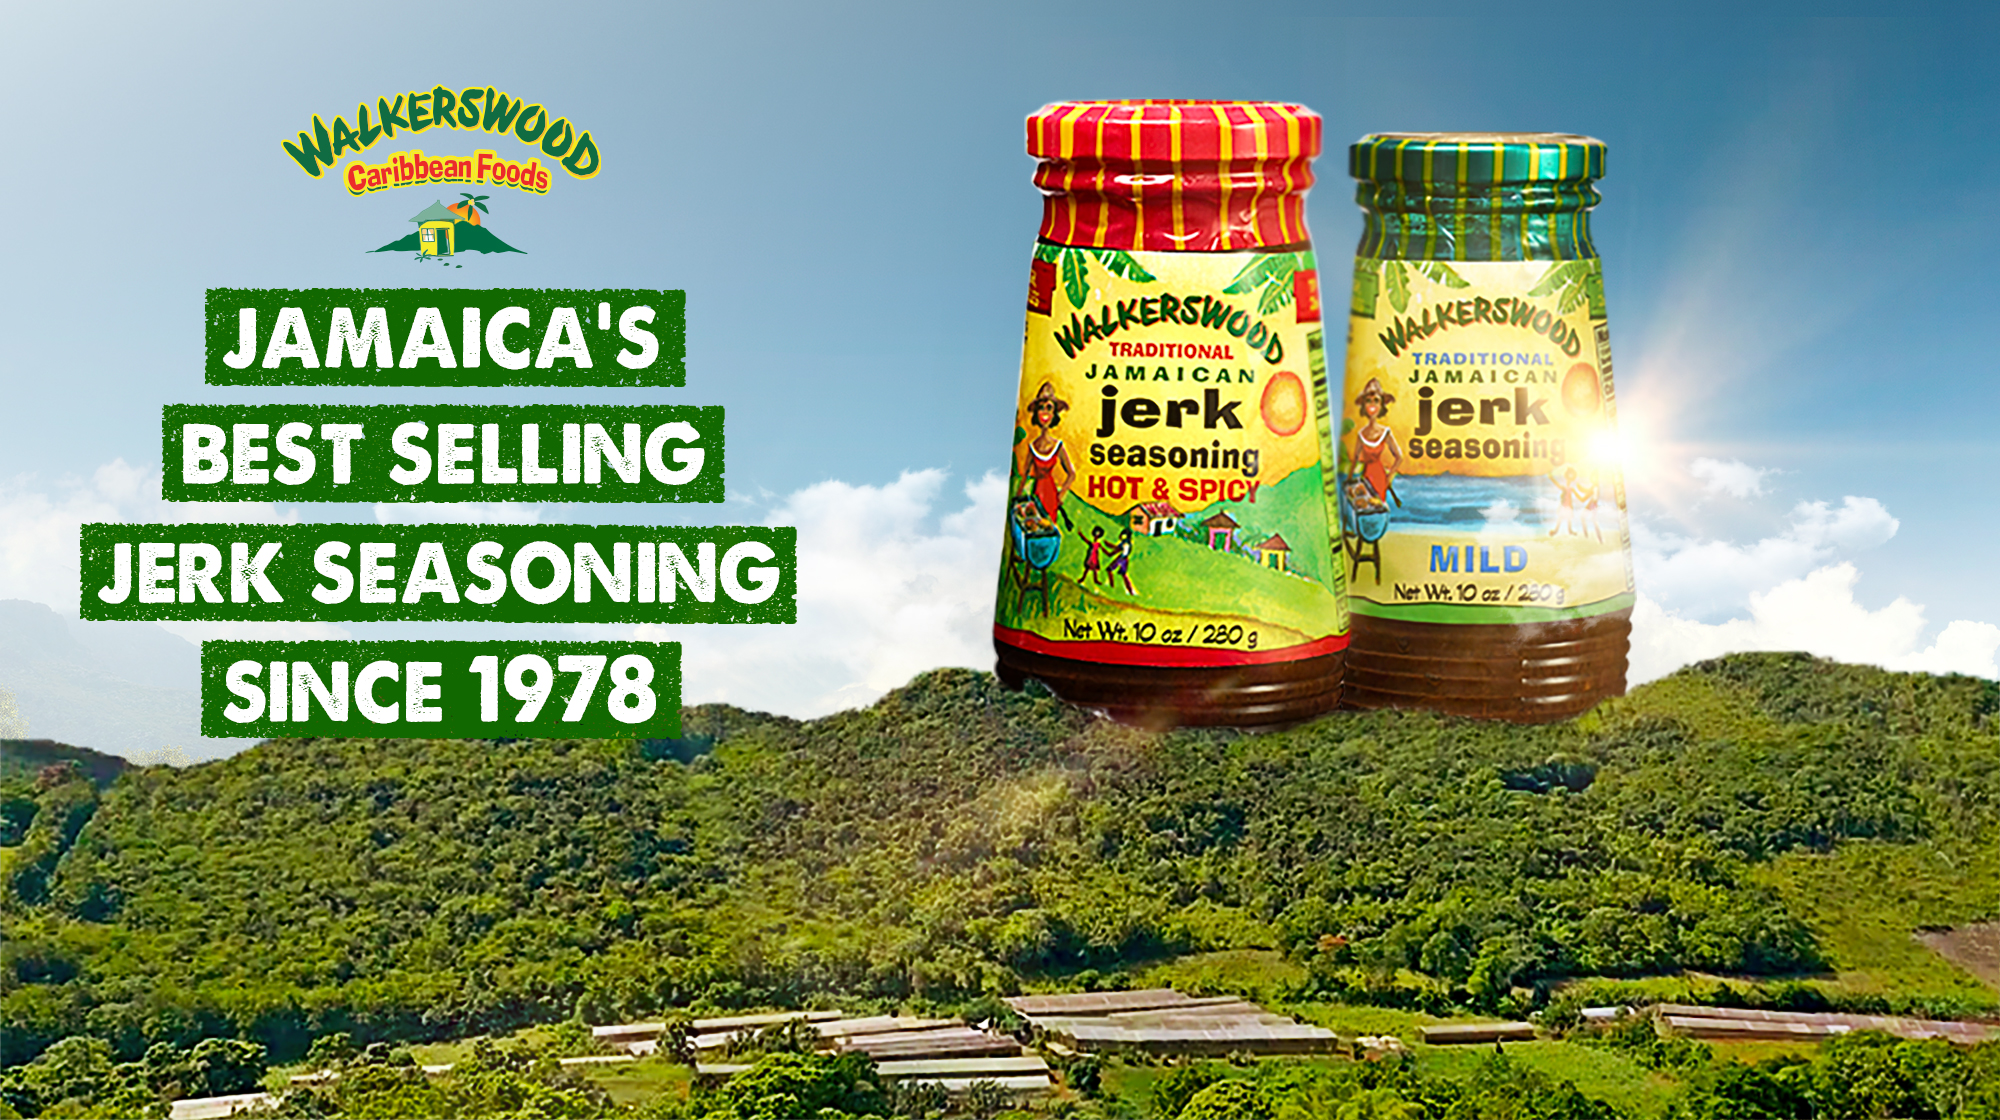 Walkerswood Traditional Jamaican Jerk Seasoning, 10 oz: $6.75